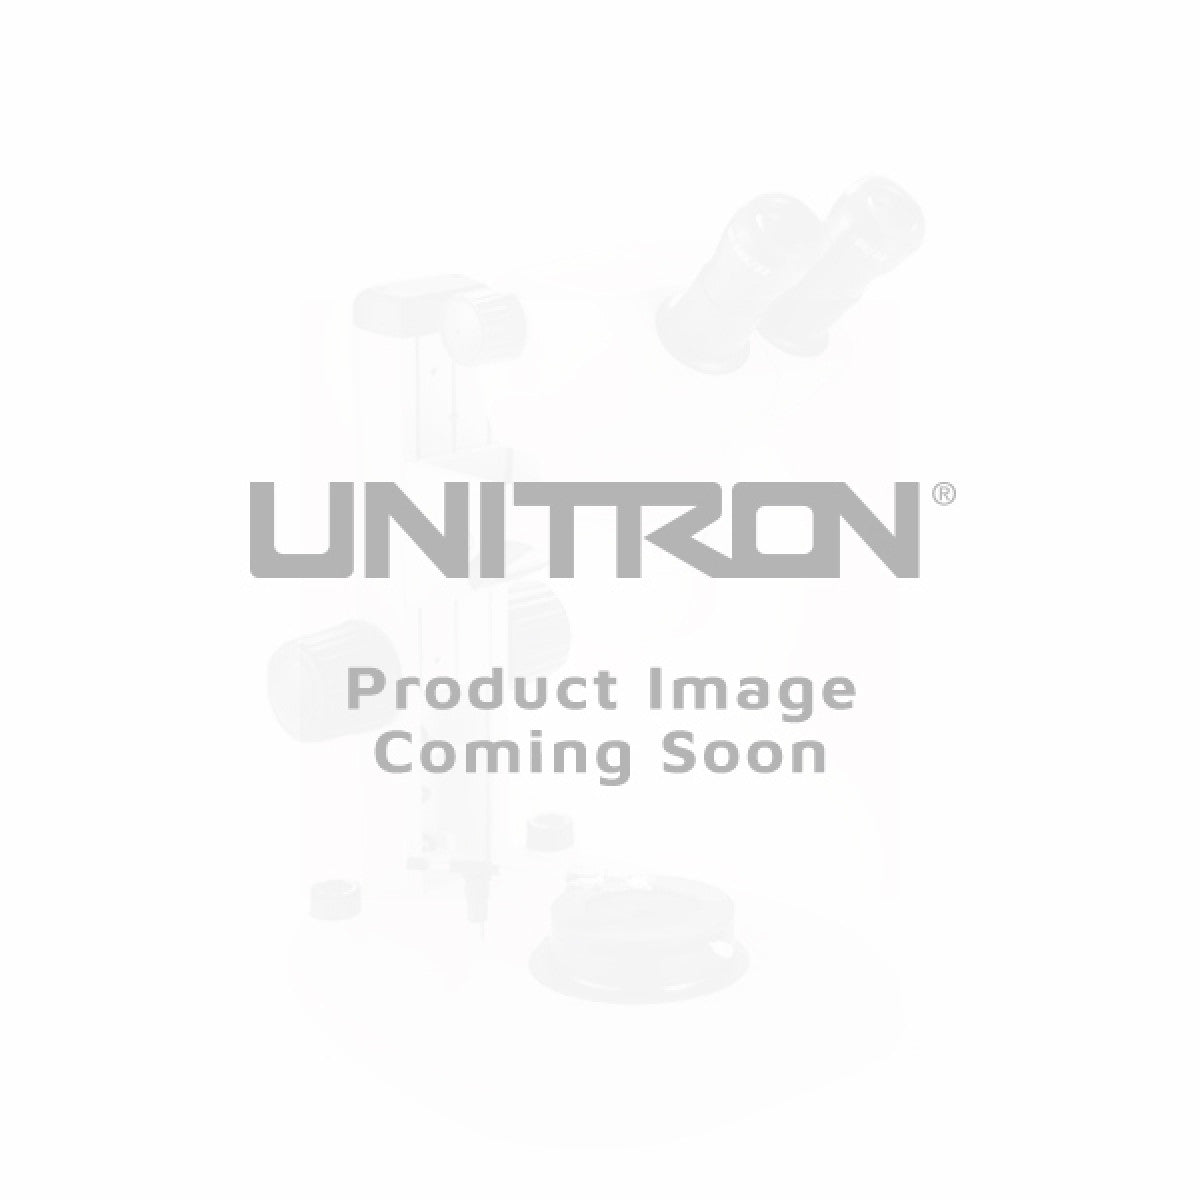 Unitron 50x LWD BF/DF DIC M Semi-APO Objective - microscopemarketplace